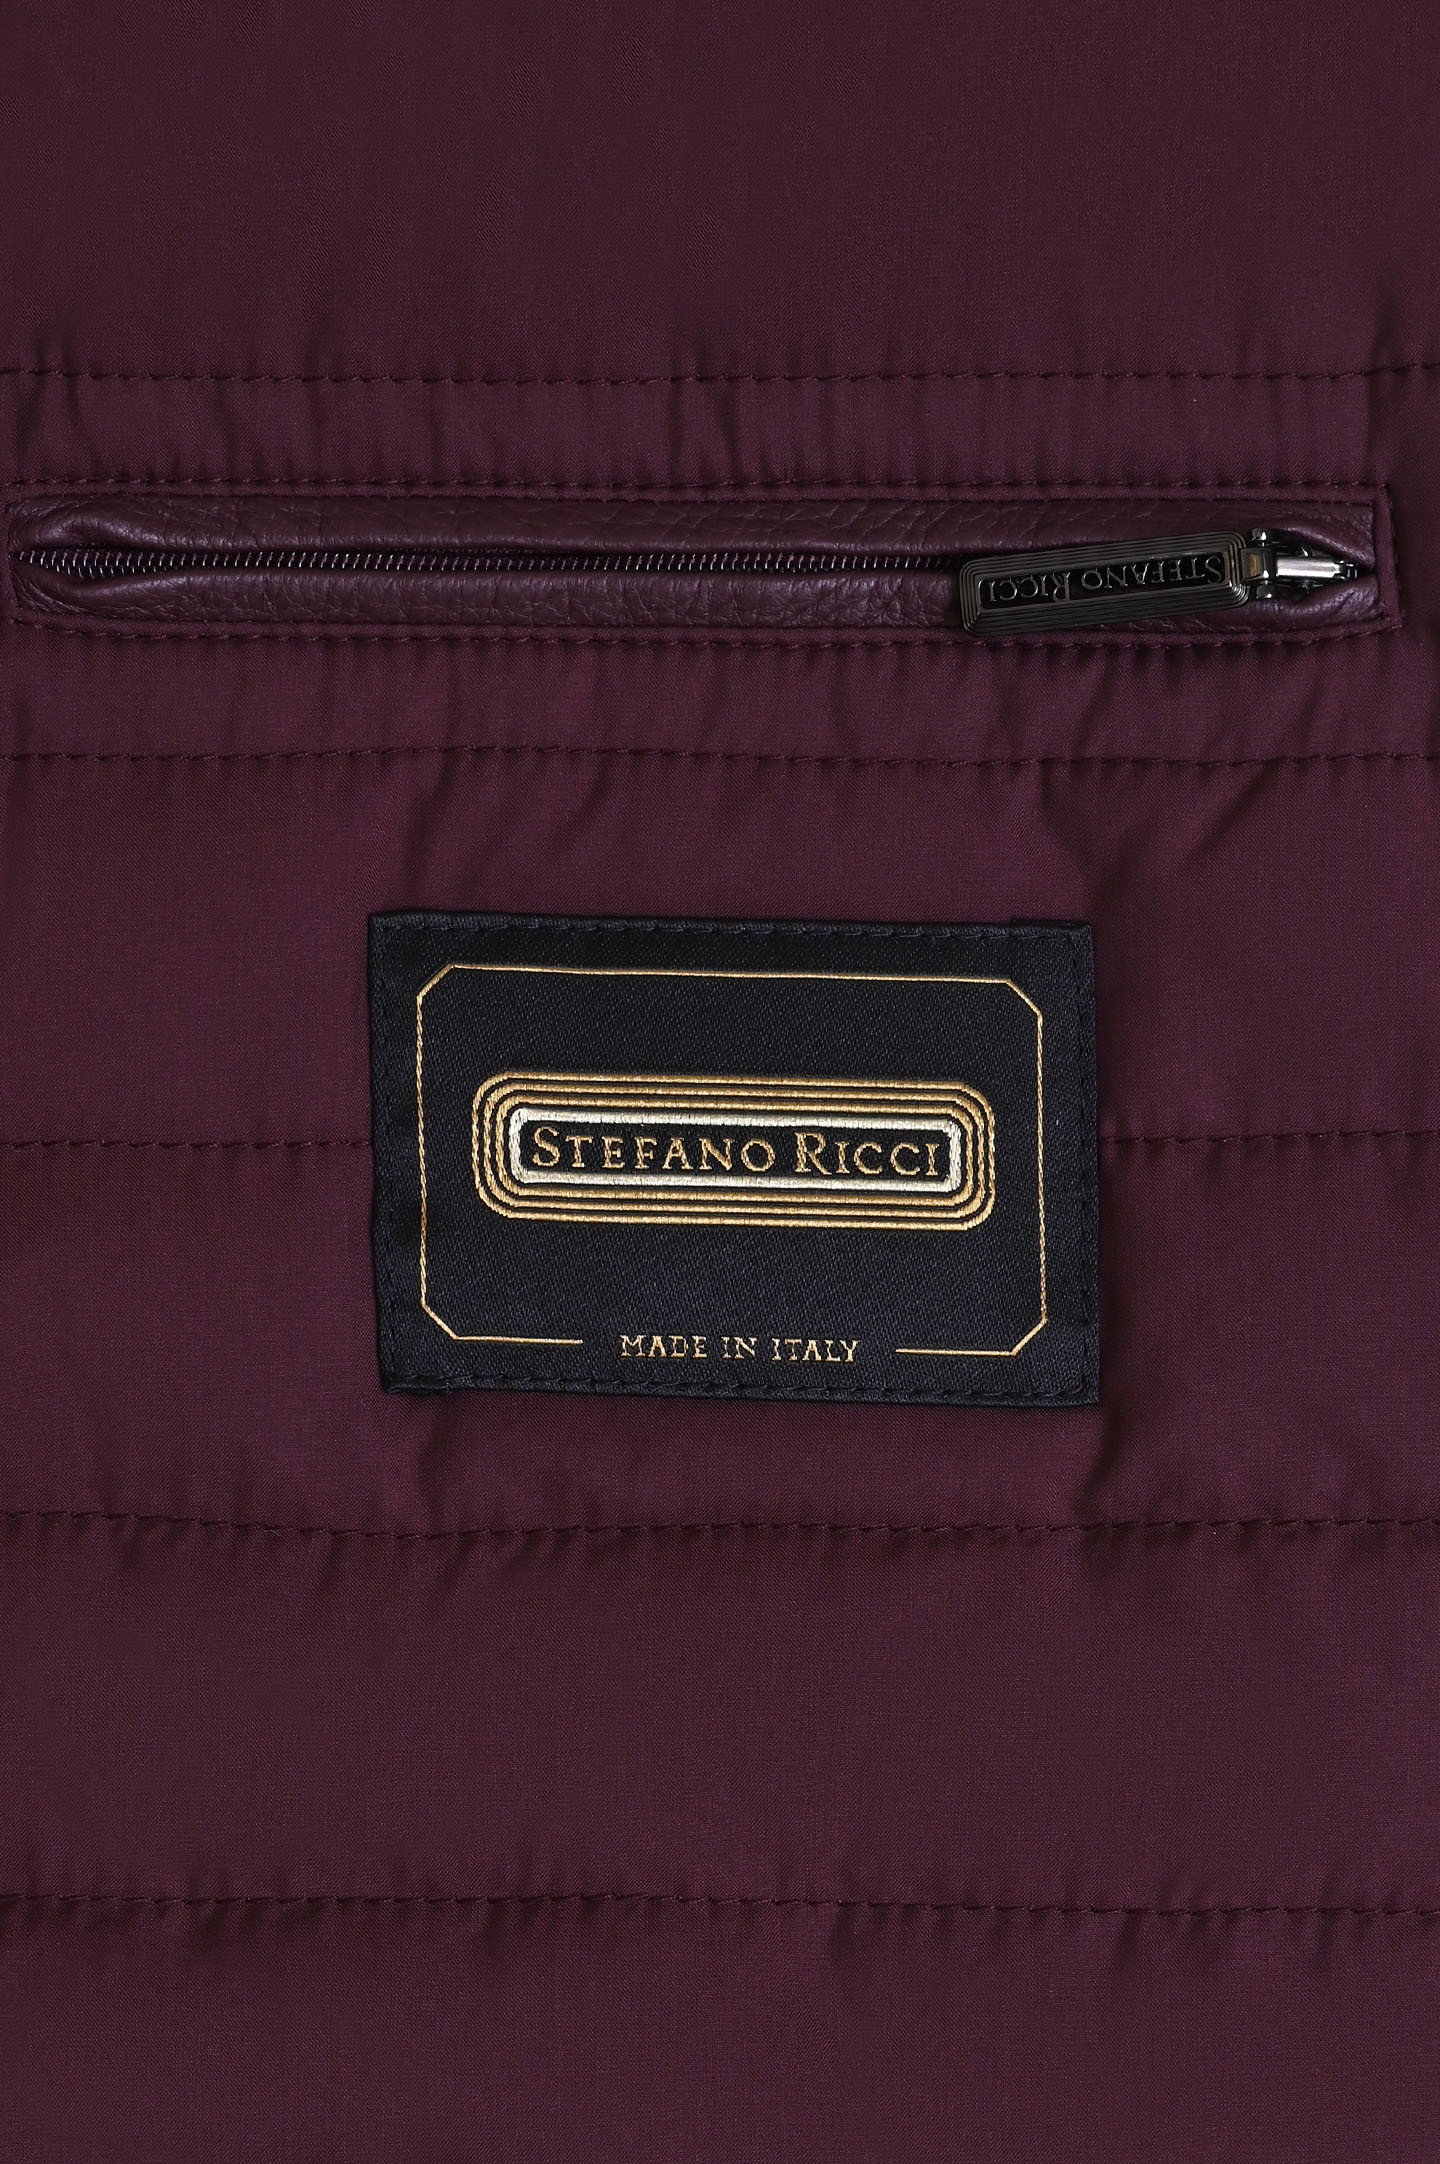 Куртка STEFANO RICCI MDJ9300030 3602, цвет: Бордовый, Мужской